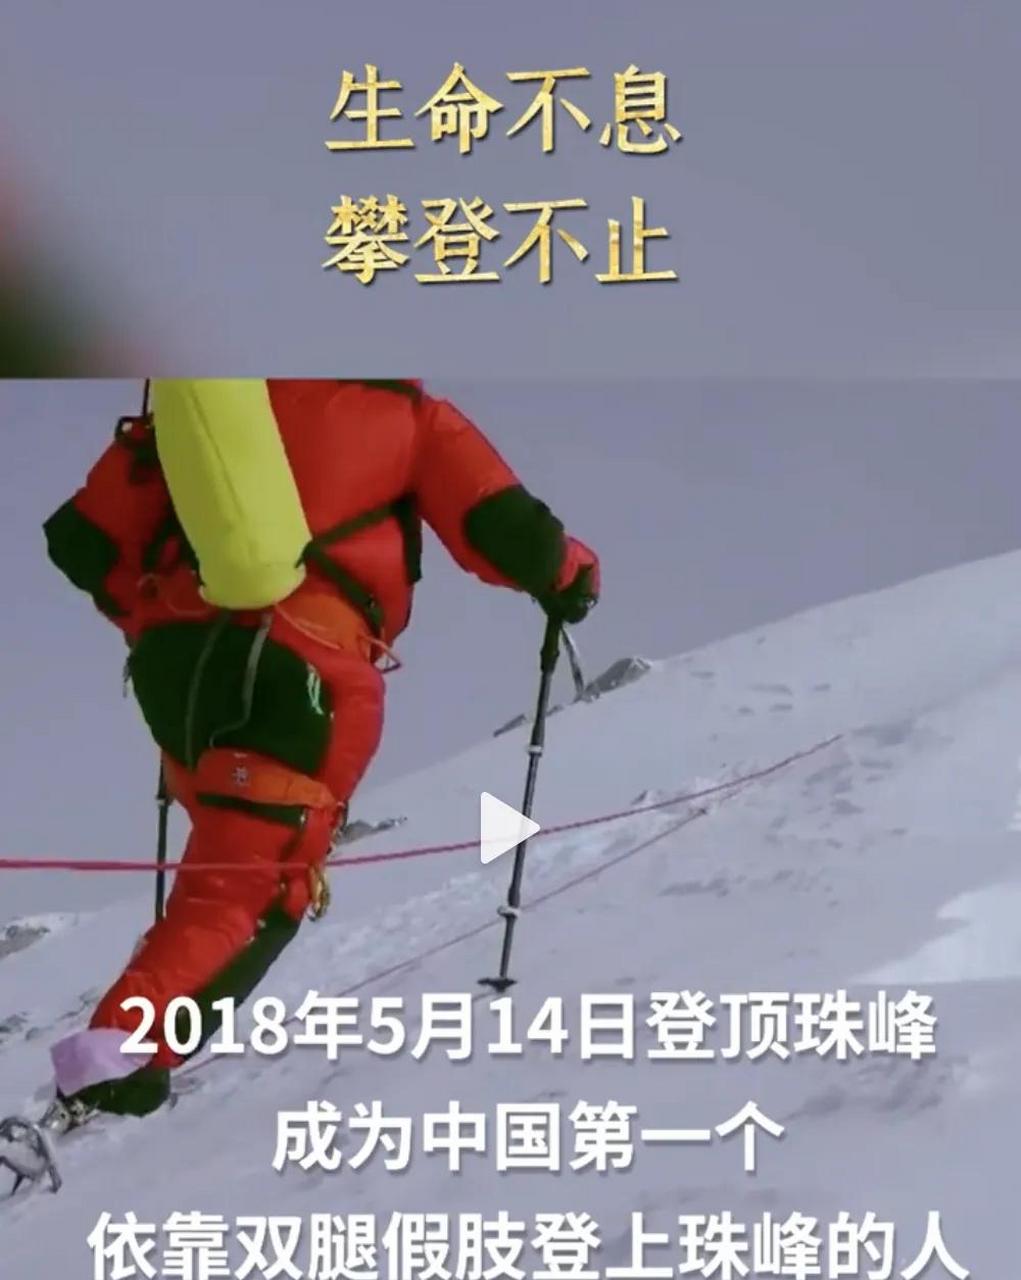 领动计划 2003年,52岁的王石,决定攀登珠穆朗玛峰,爬到7000米的时候